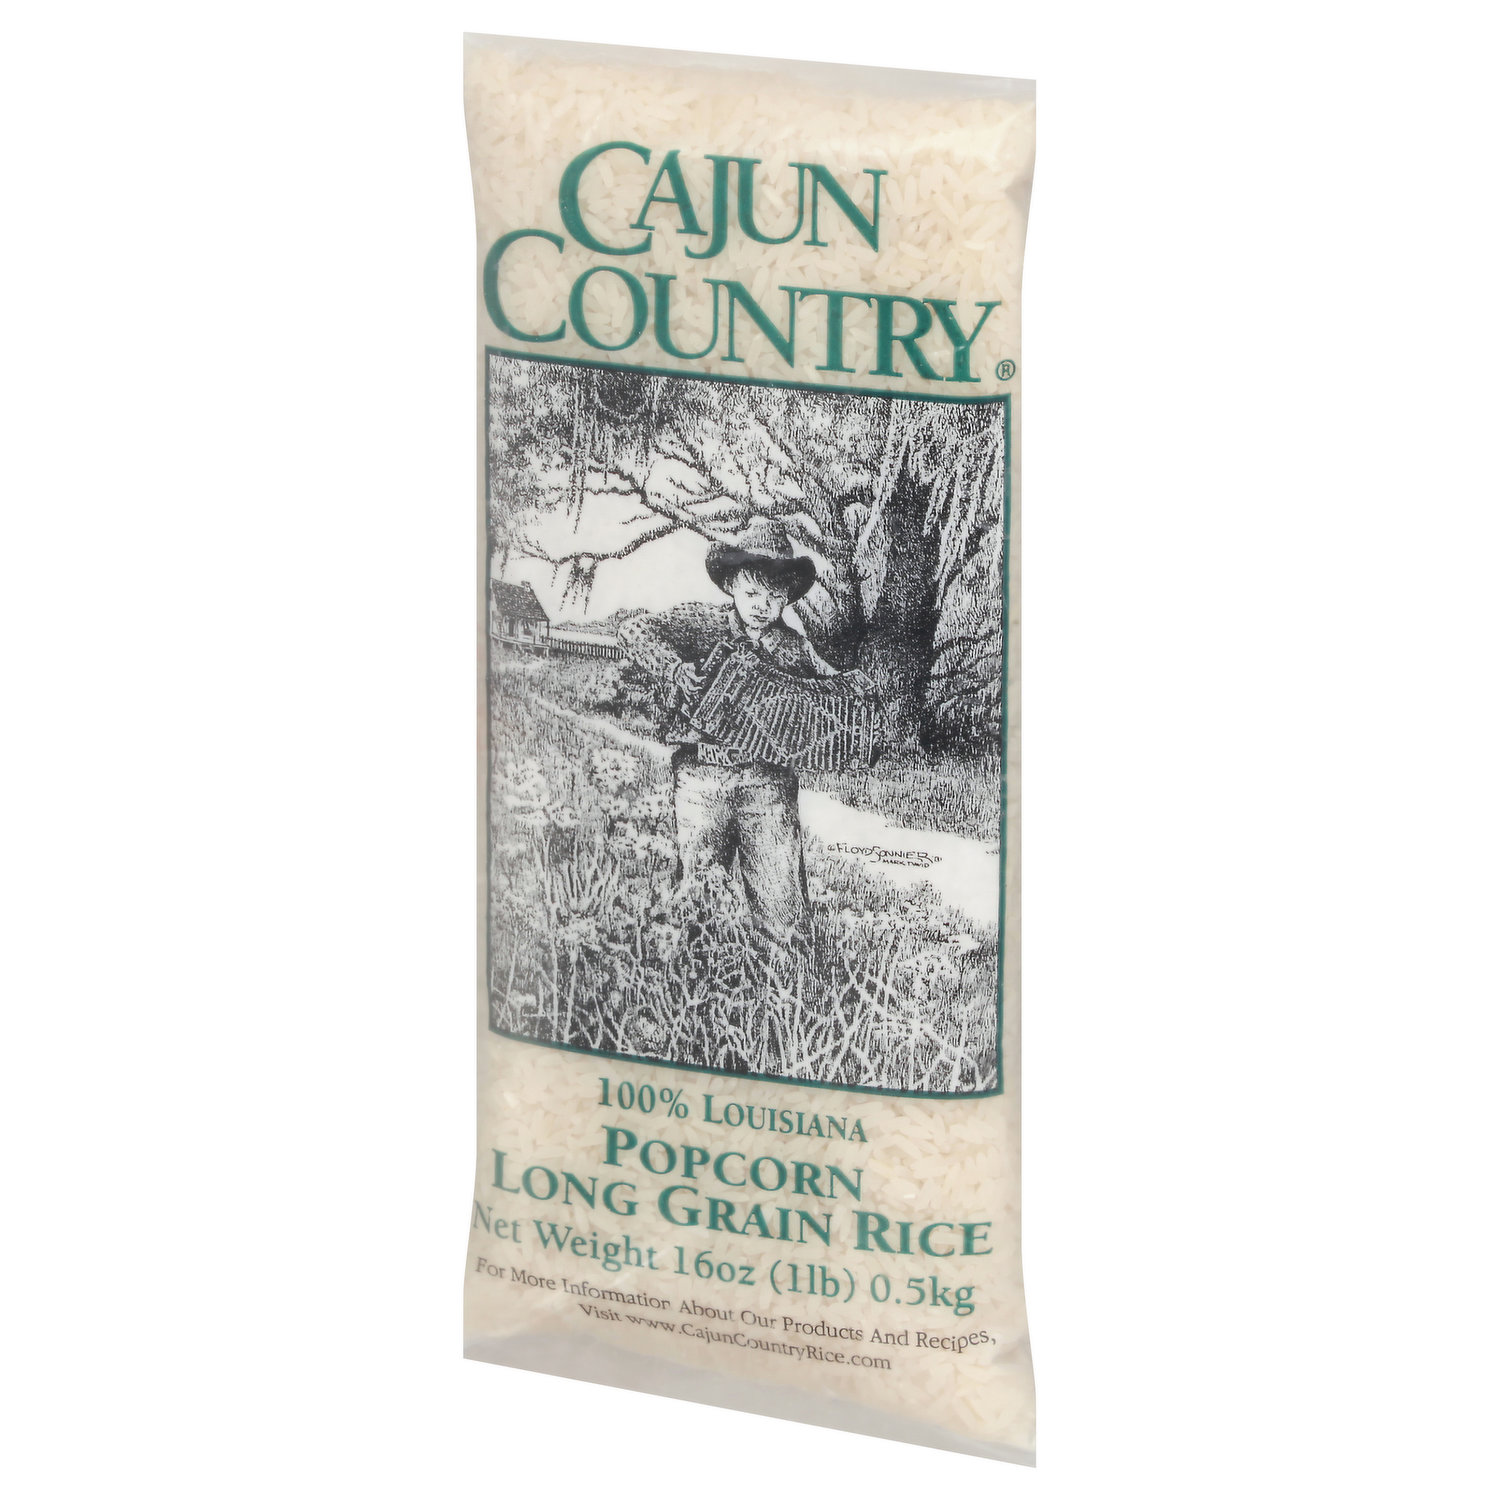 Cajun Country Long Grain Rice